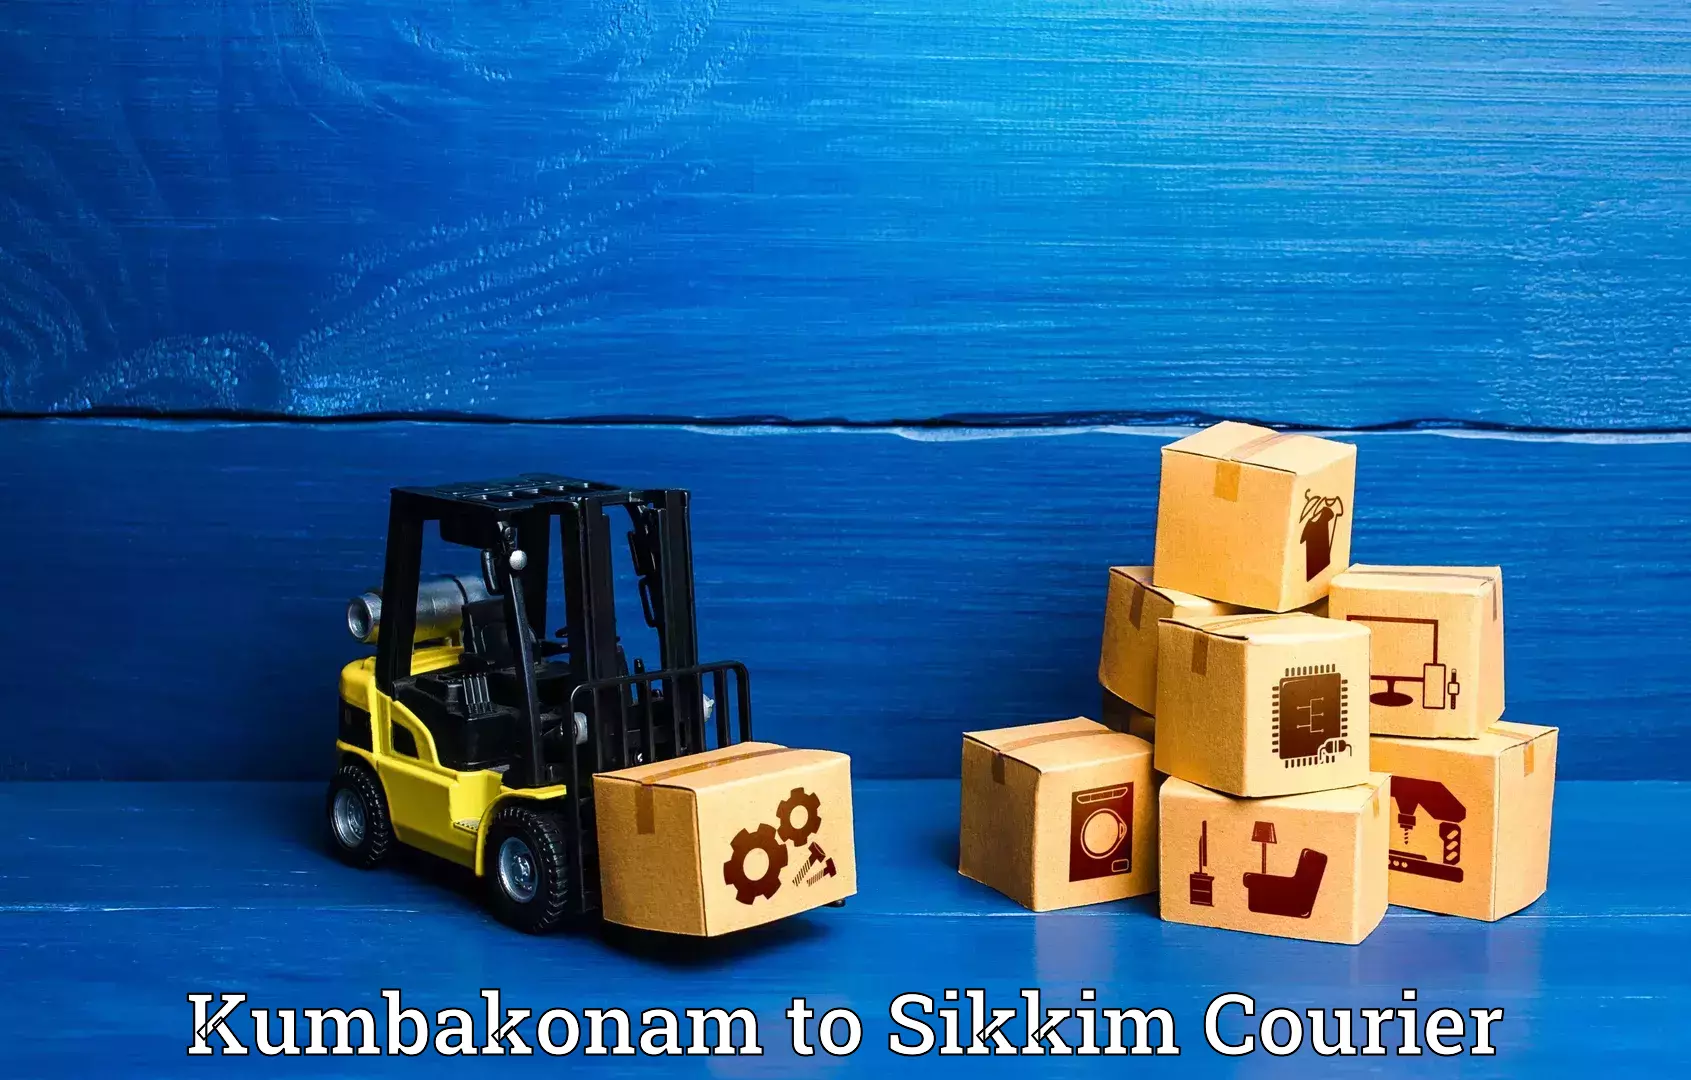 Urgent luggage shipment Kumbakonam to West Sikkim